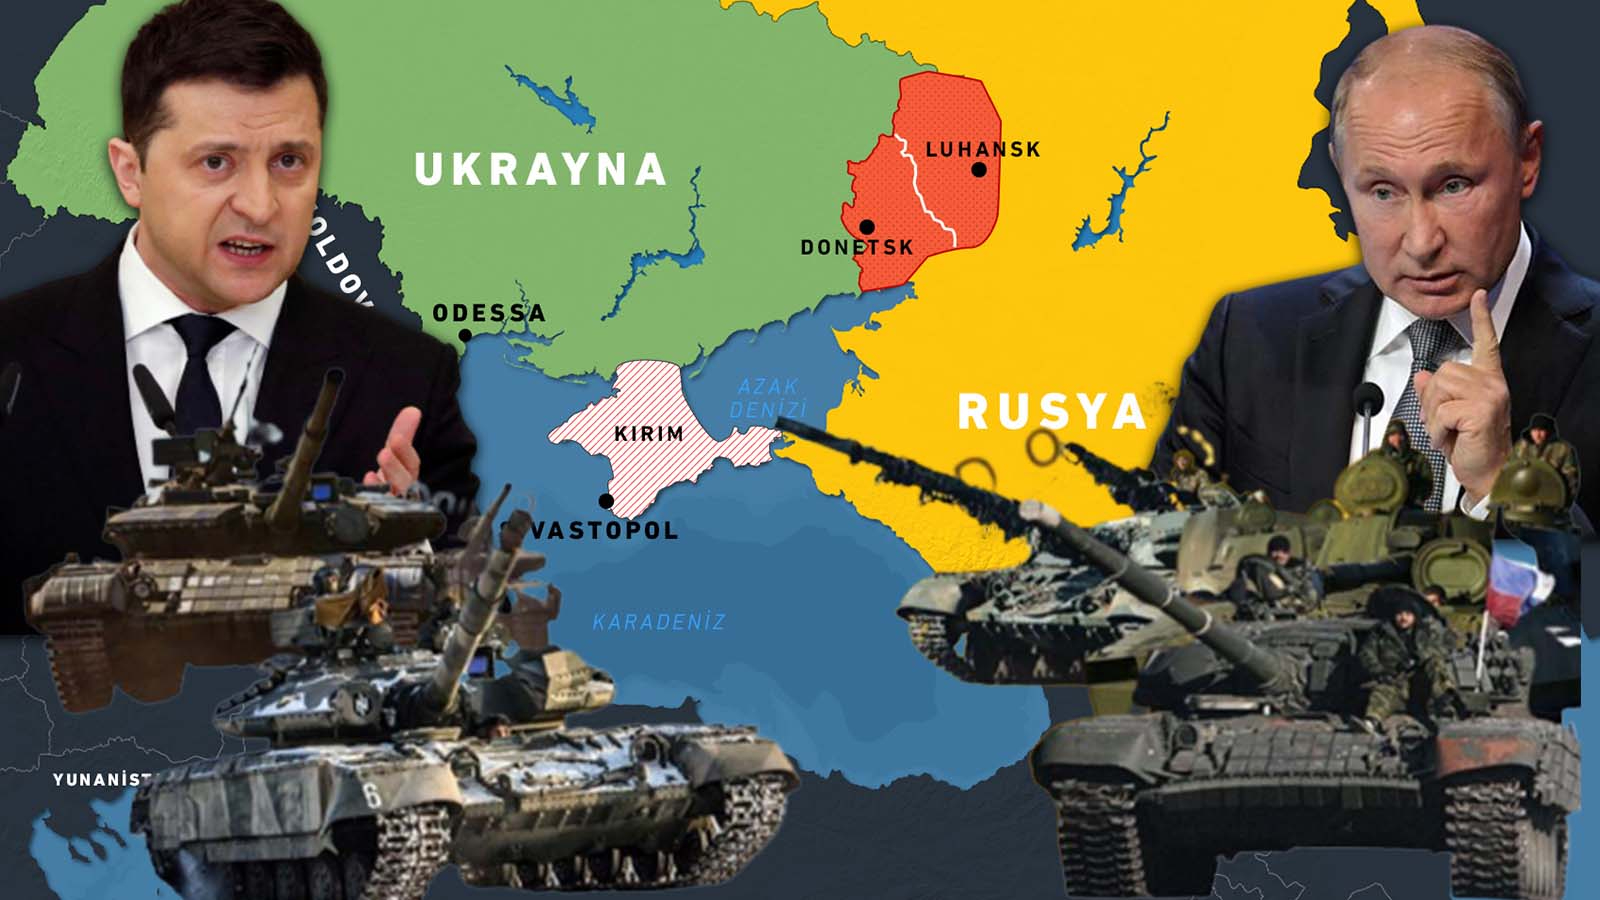 Son dakika | Bakan Çavuşoğlu'ndan Rusya - Ukrayna savaşı için kritik açıklama: Türkiye savaşa girecek, asker gönderecek yorumları doğru değil